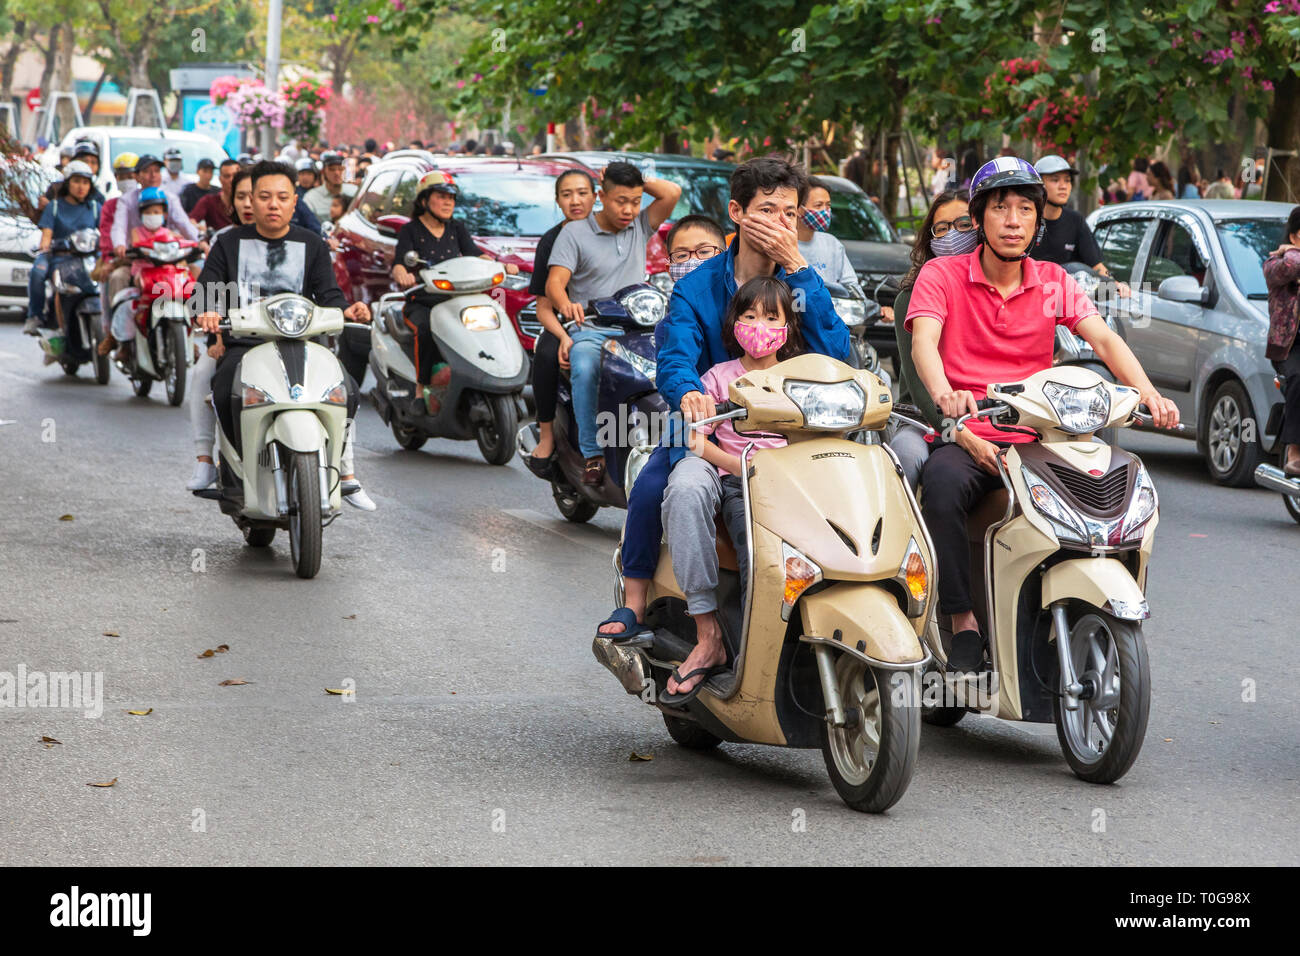 Family riding on a motorcycle, Hanoi, Vietnam, Asia Stock Photo